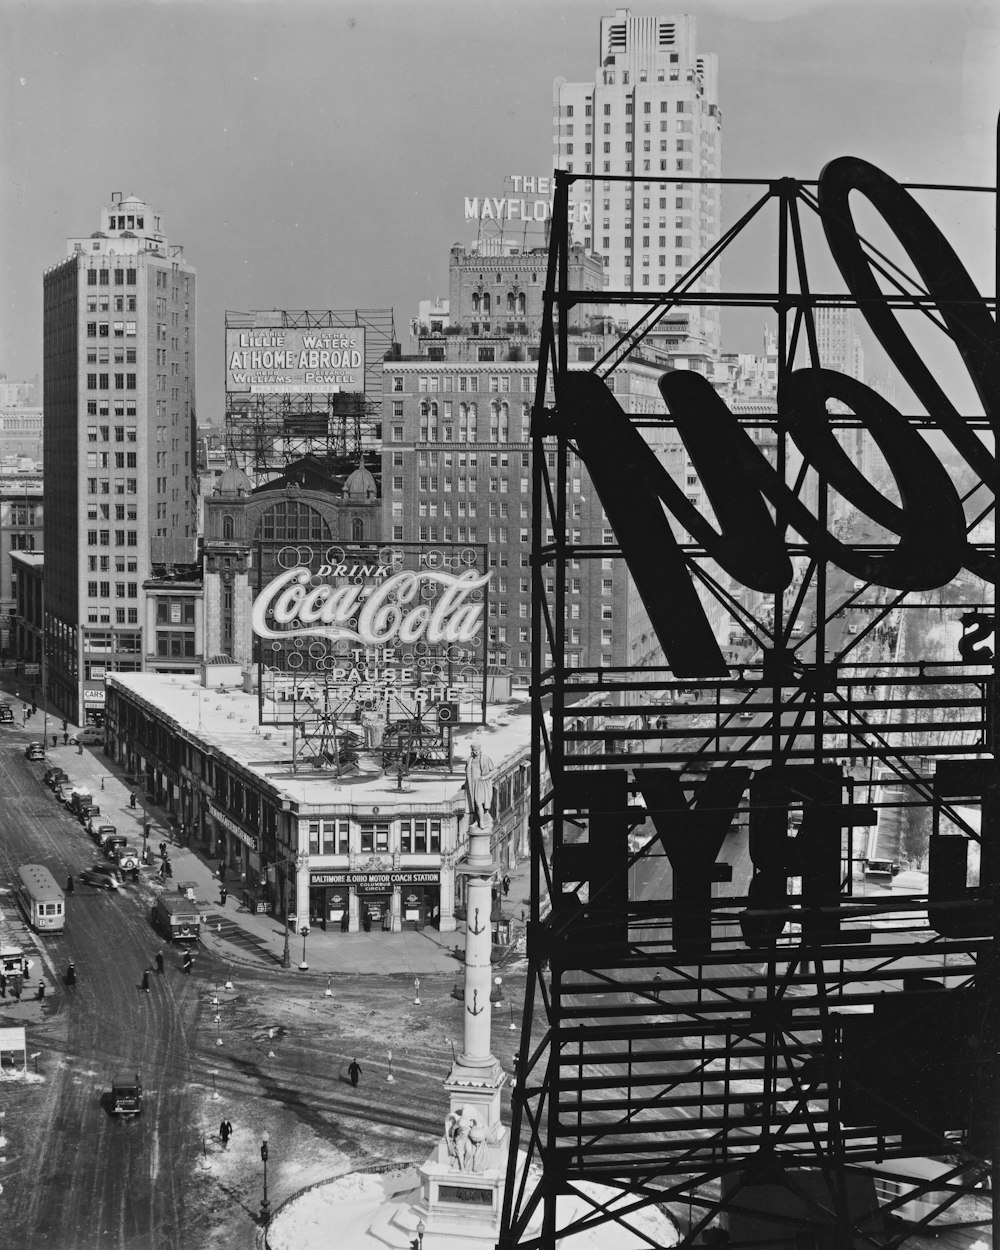 photo en niveaux de gris des bâtiments de la ville de Manhattan